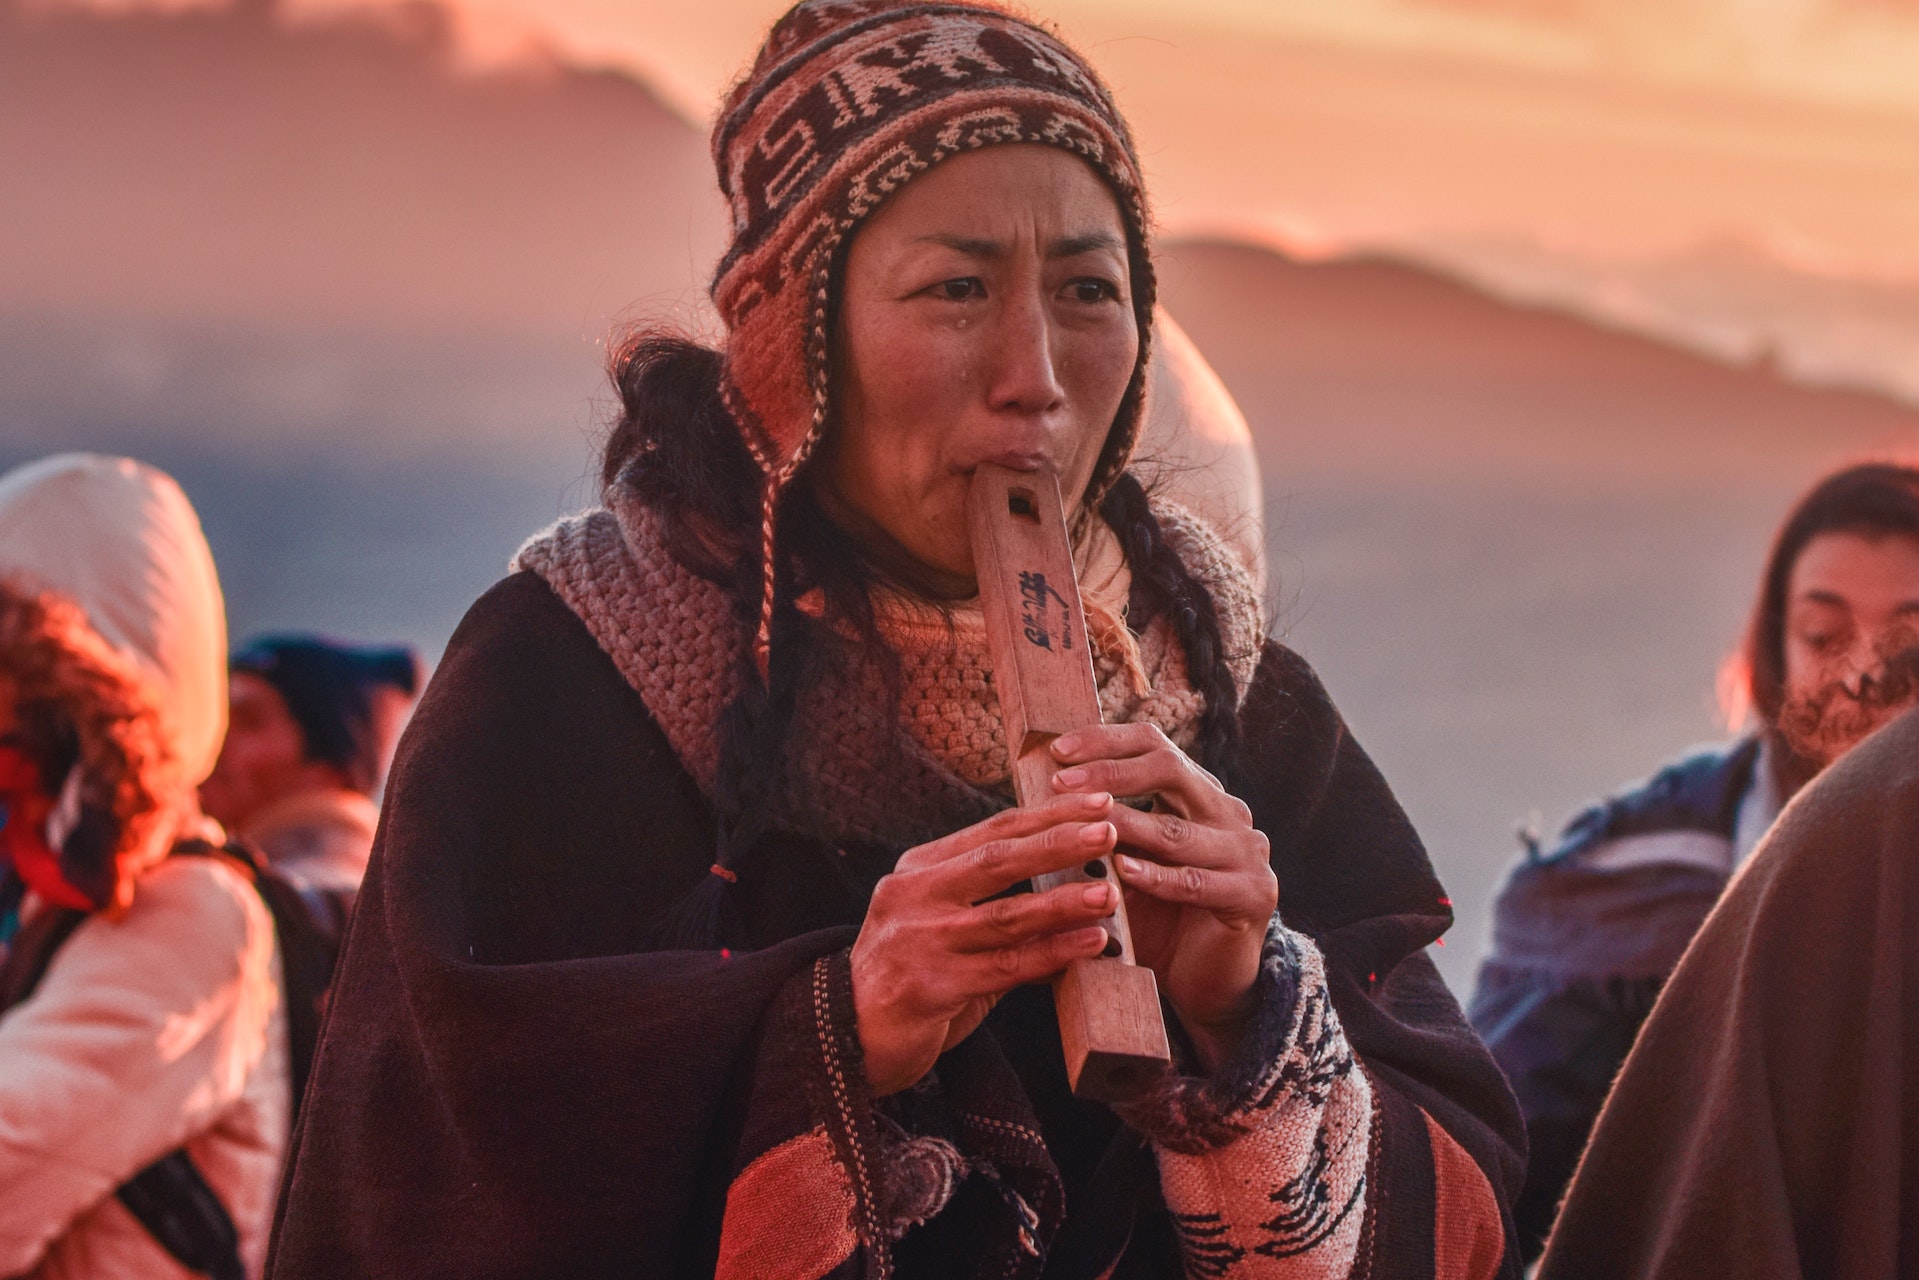 Frau im Sonnenuntergang spielt eine Art Flöte